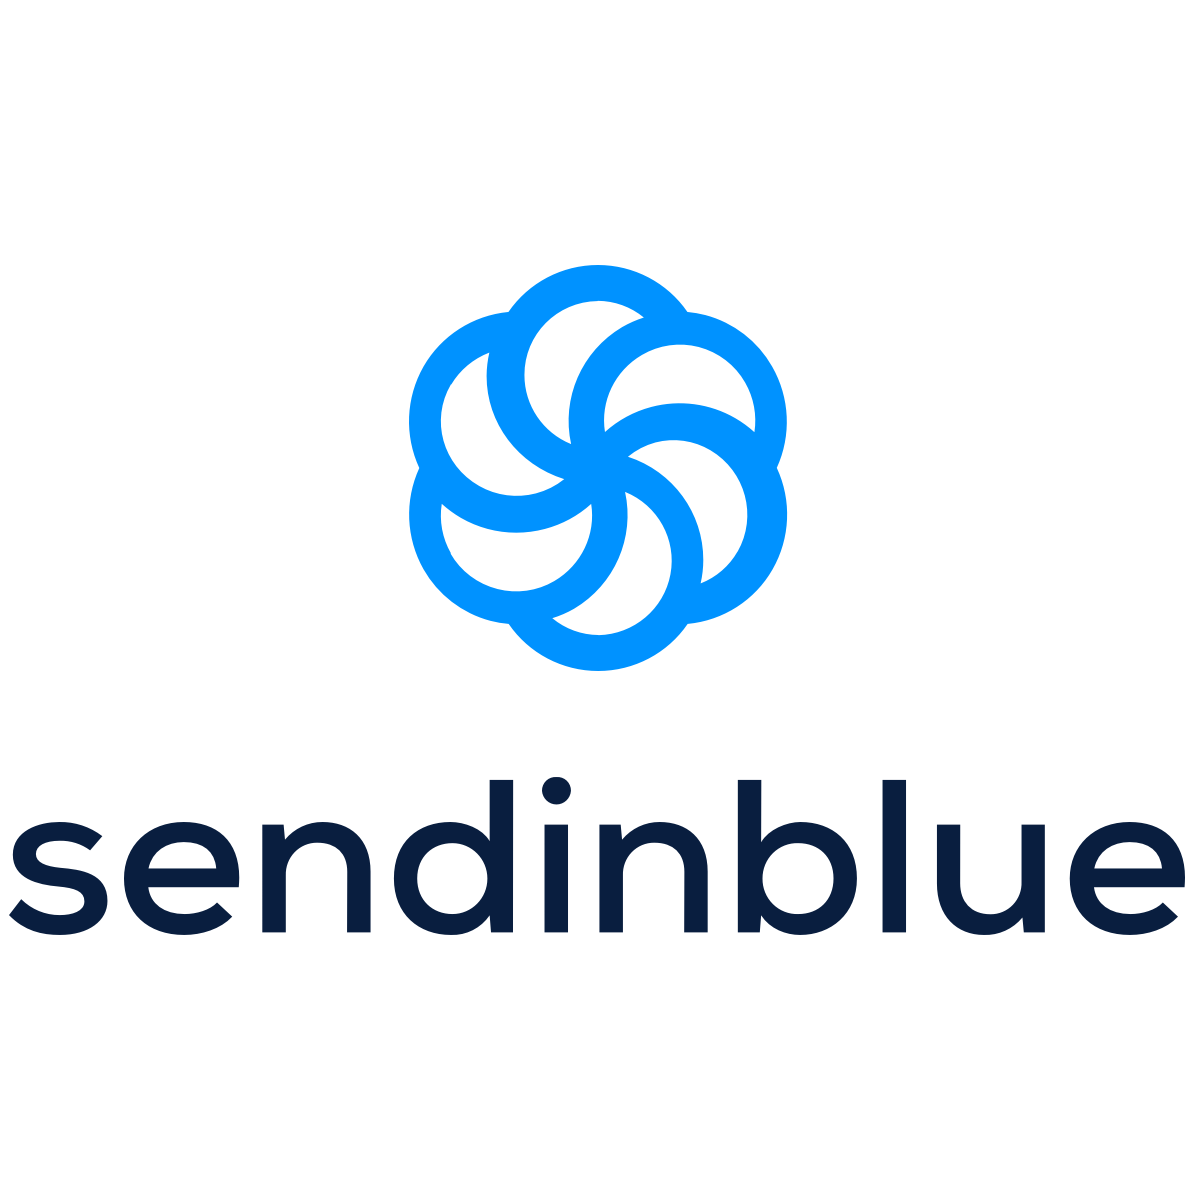 Sendinblue GmbH